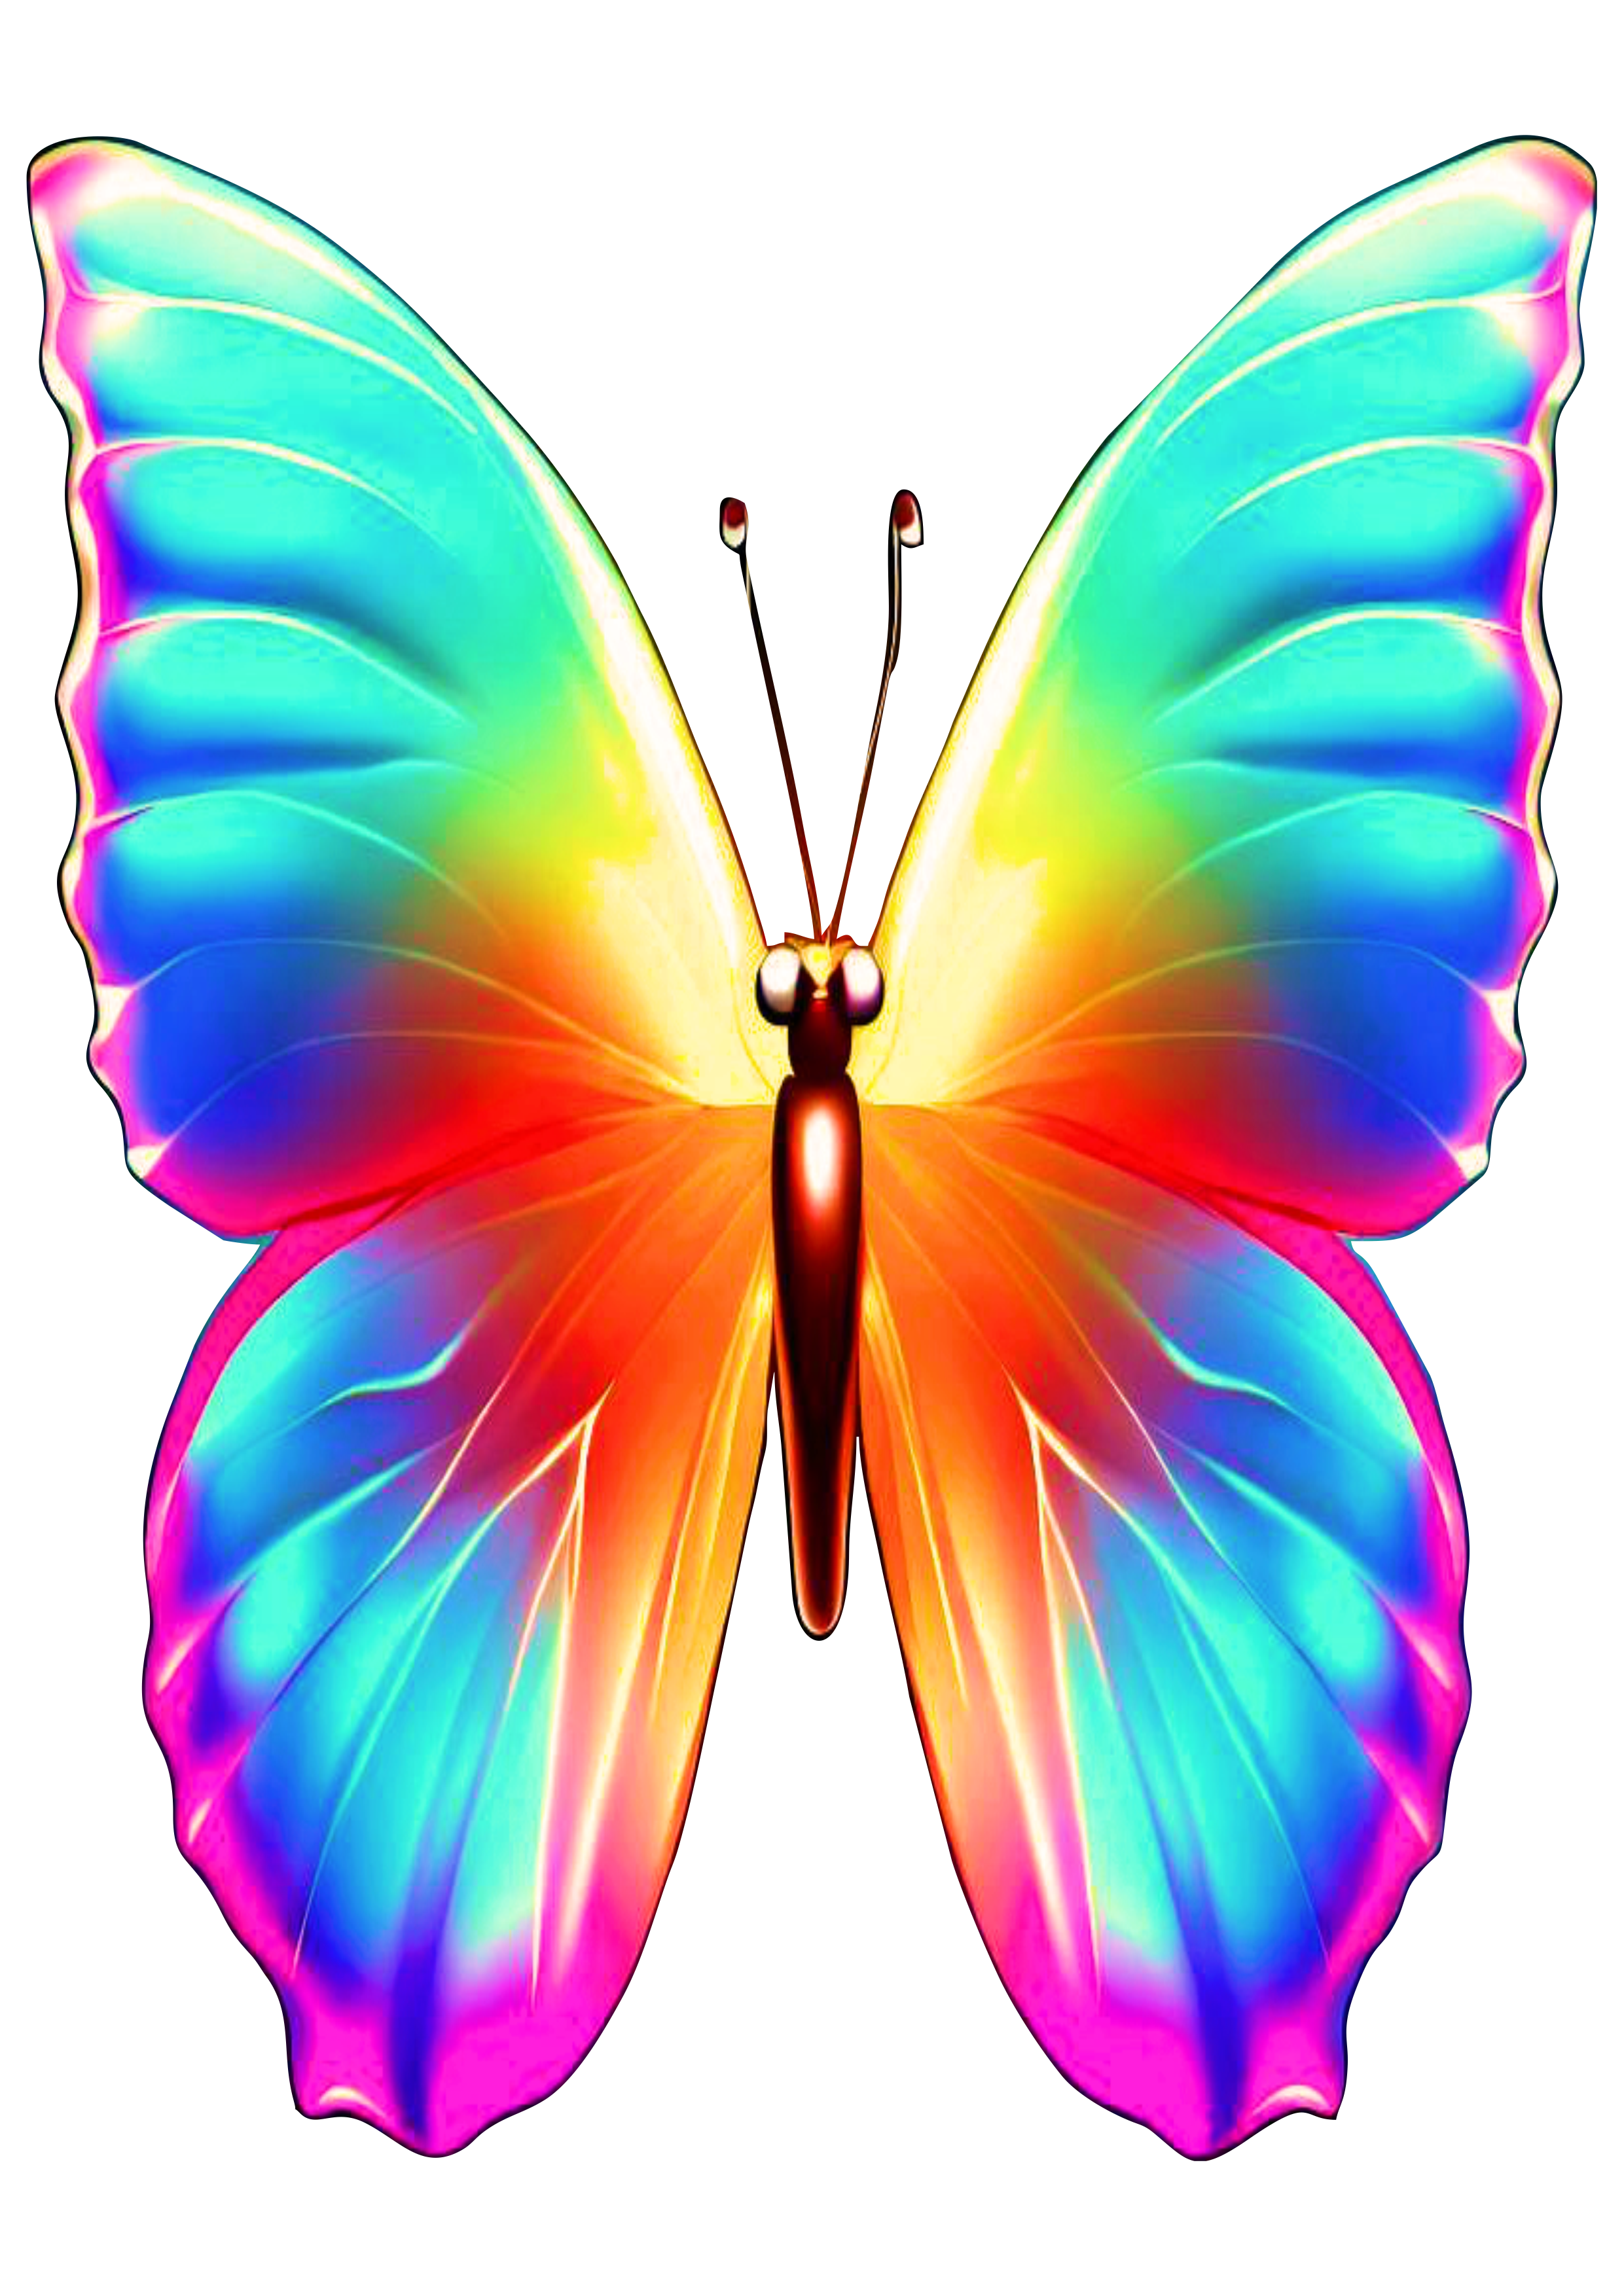 Borboleta colorida arte conceitual imagem sem fundo arco-iris png